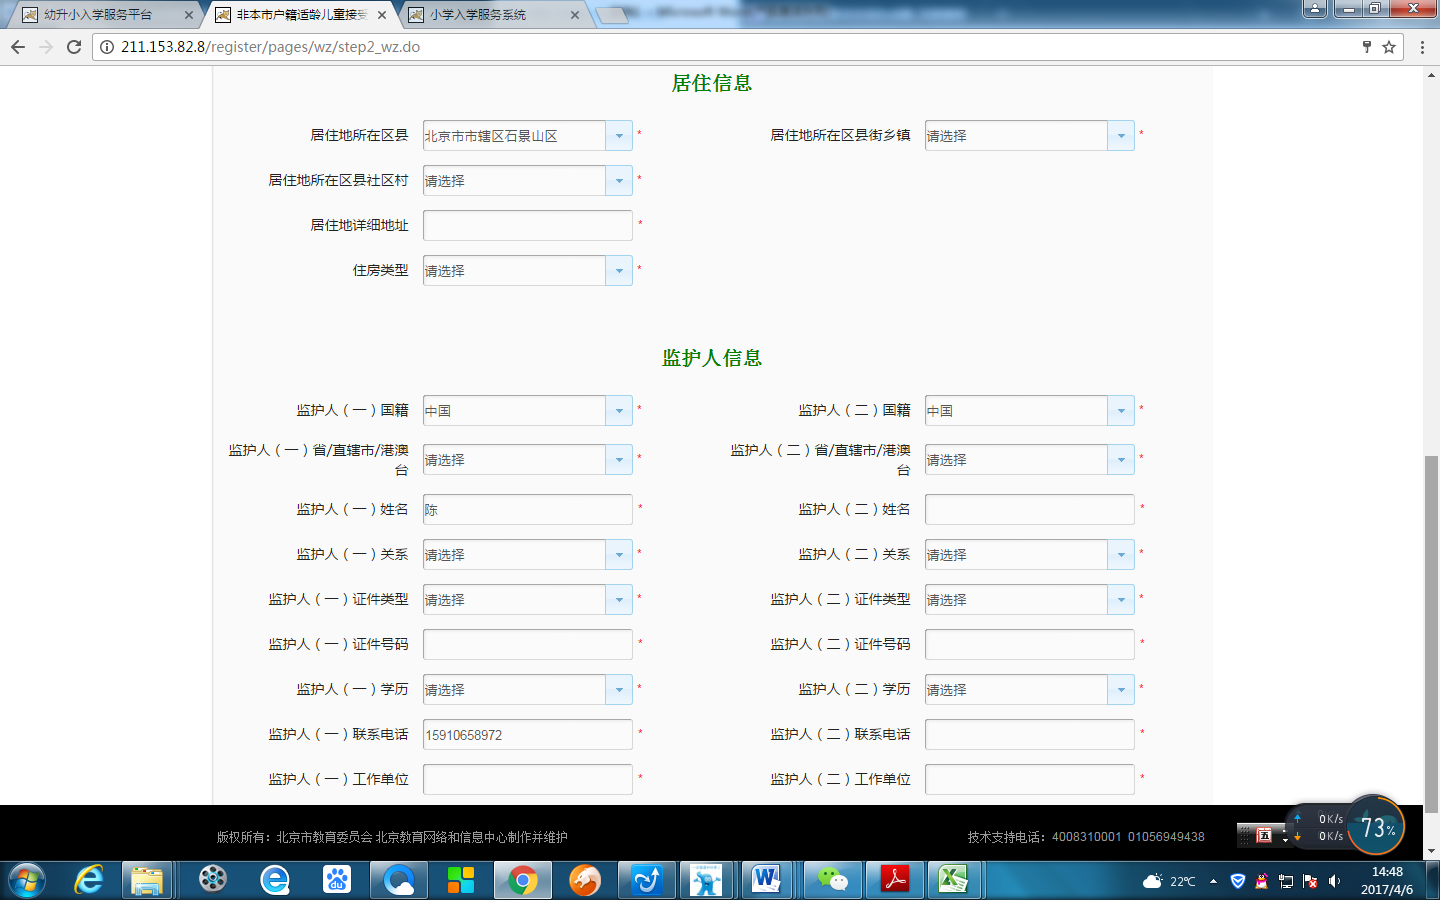 非北京市户籍适龄儿童入学信息采集流程图5